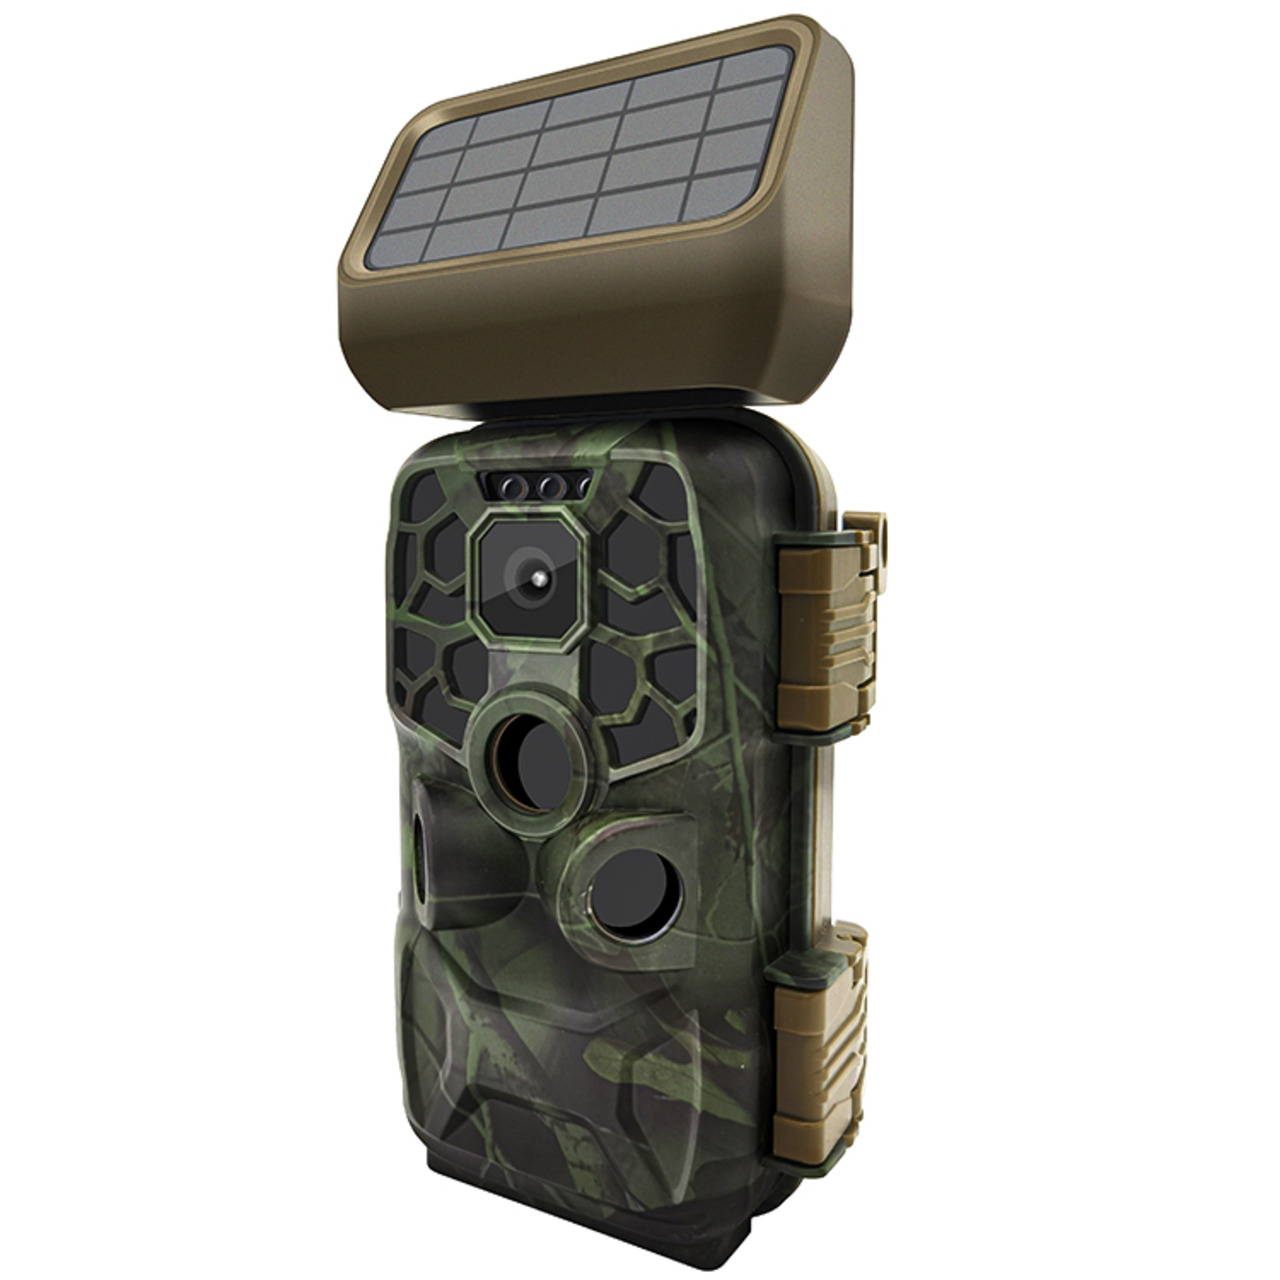 Braun Fotofalle - Wildkamera Scouting Cam BLACK400 WiFi SOLAR- 24 MP- IP56- Auslsezeit 0-4s 